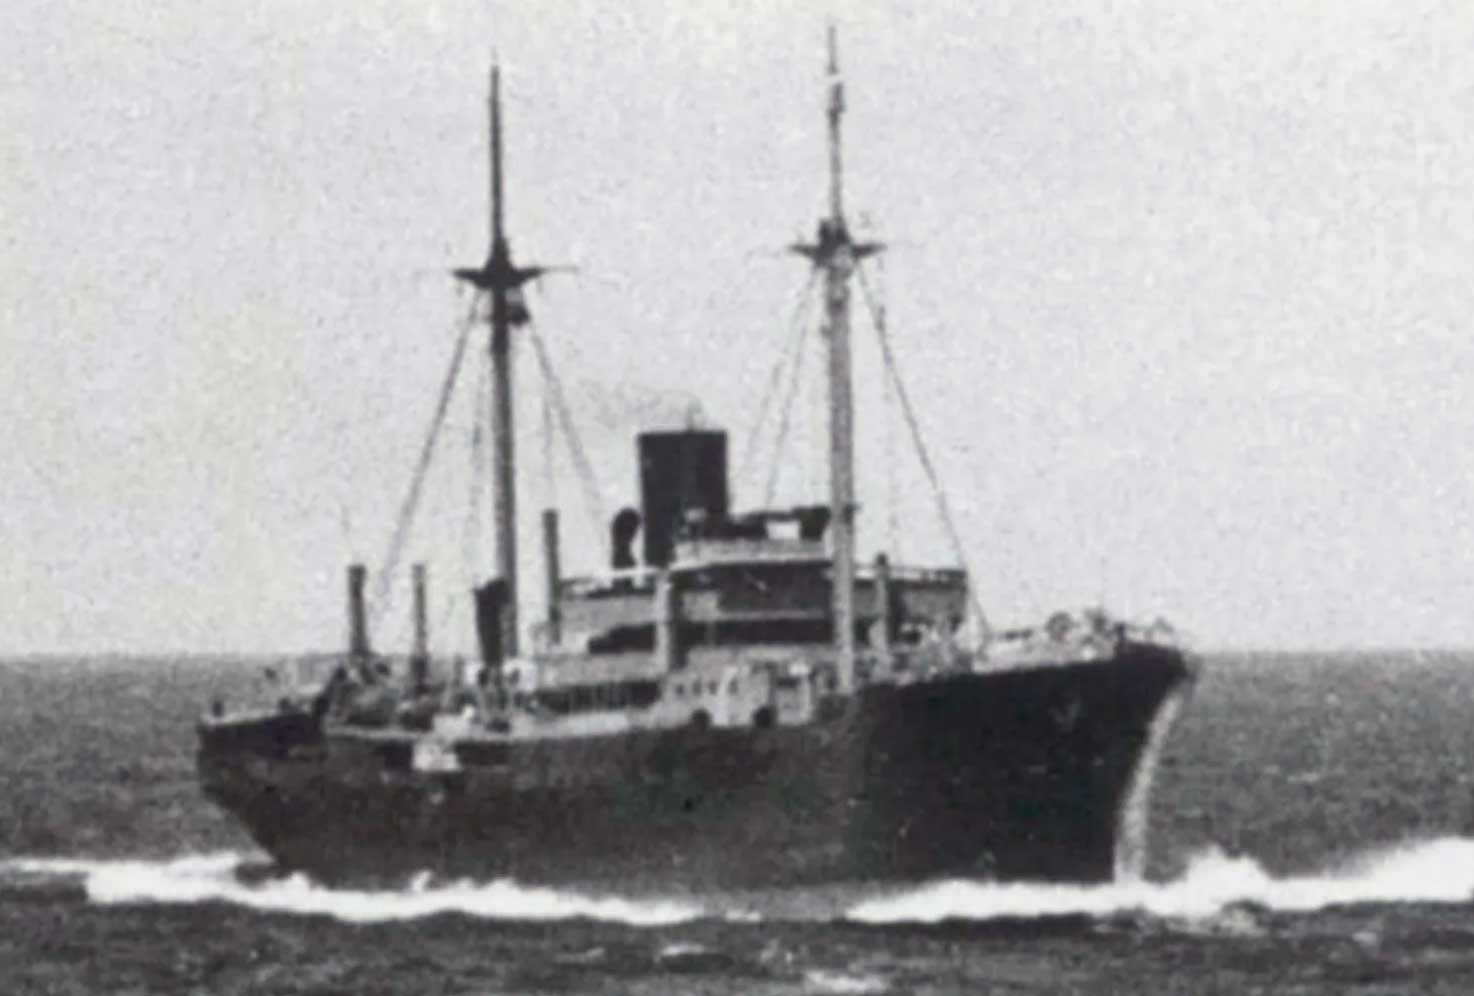 Немецкий вспомогательный крейсер «Орион» или подобный ему корабль